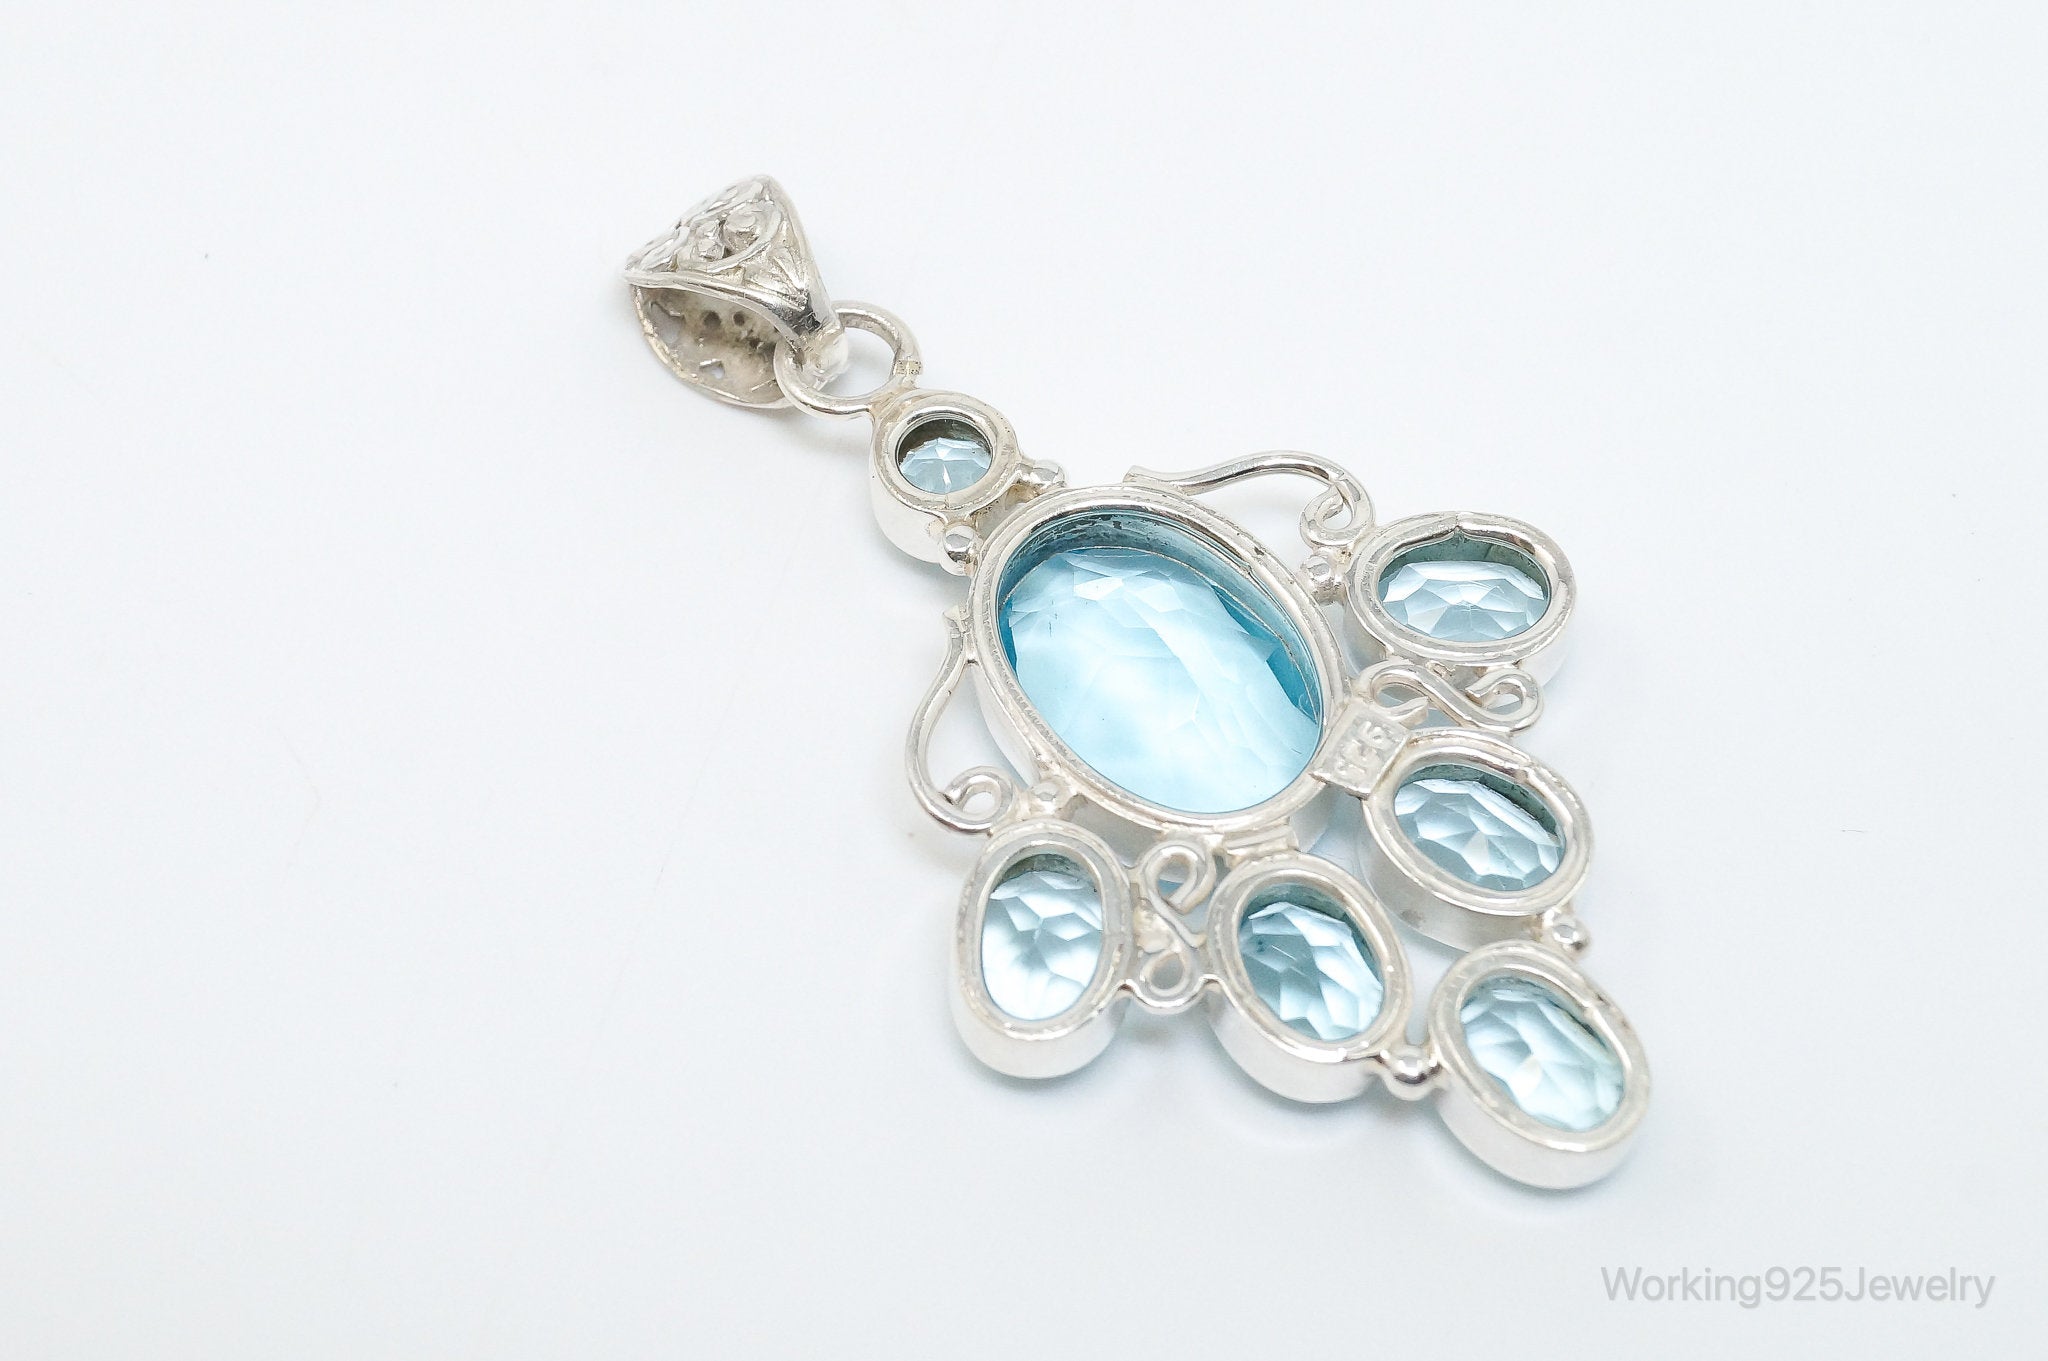 Large Vintage Blue Topaz Sterling Silver Necklace Pendant